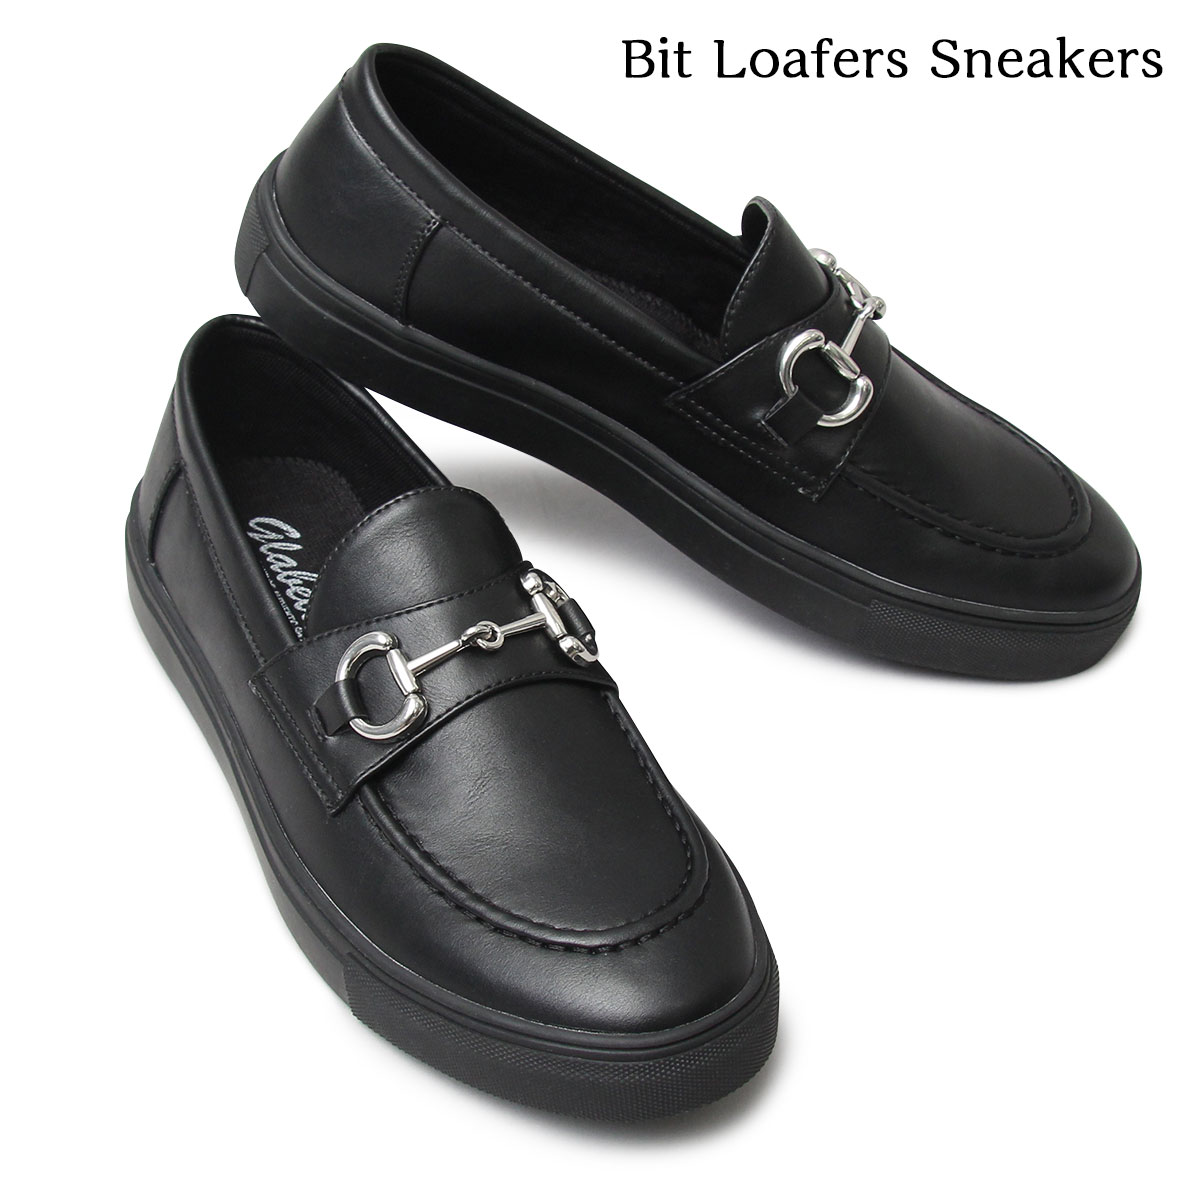 送料無料 glabella グラベラ Bit Loafers Sneakers ローファー スニーカー メンズ ビットローファー 黒 無地 シンプル シューズ 靴 glbt-235